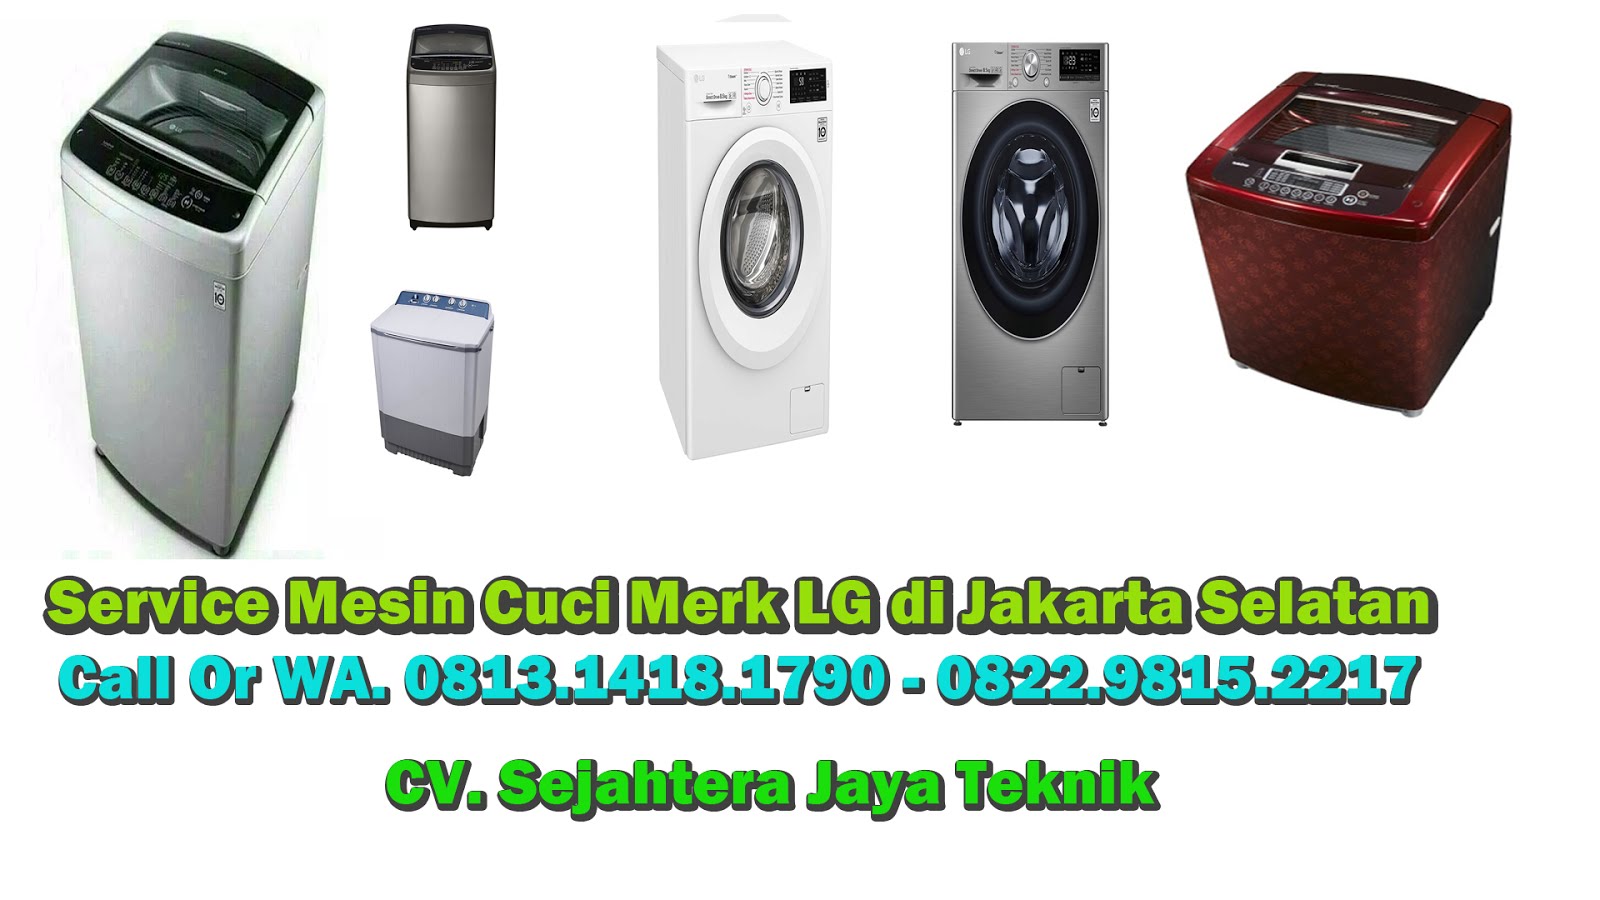 Service Mesin Cuci LG di Jakarta Selatan